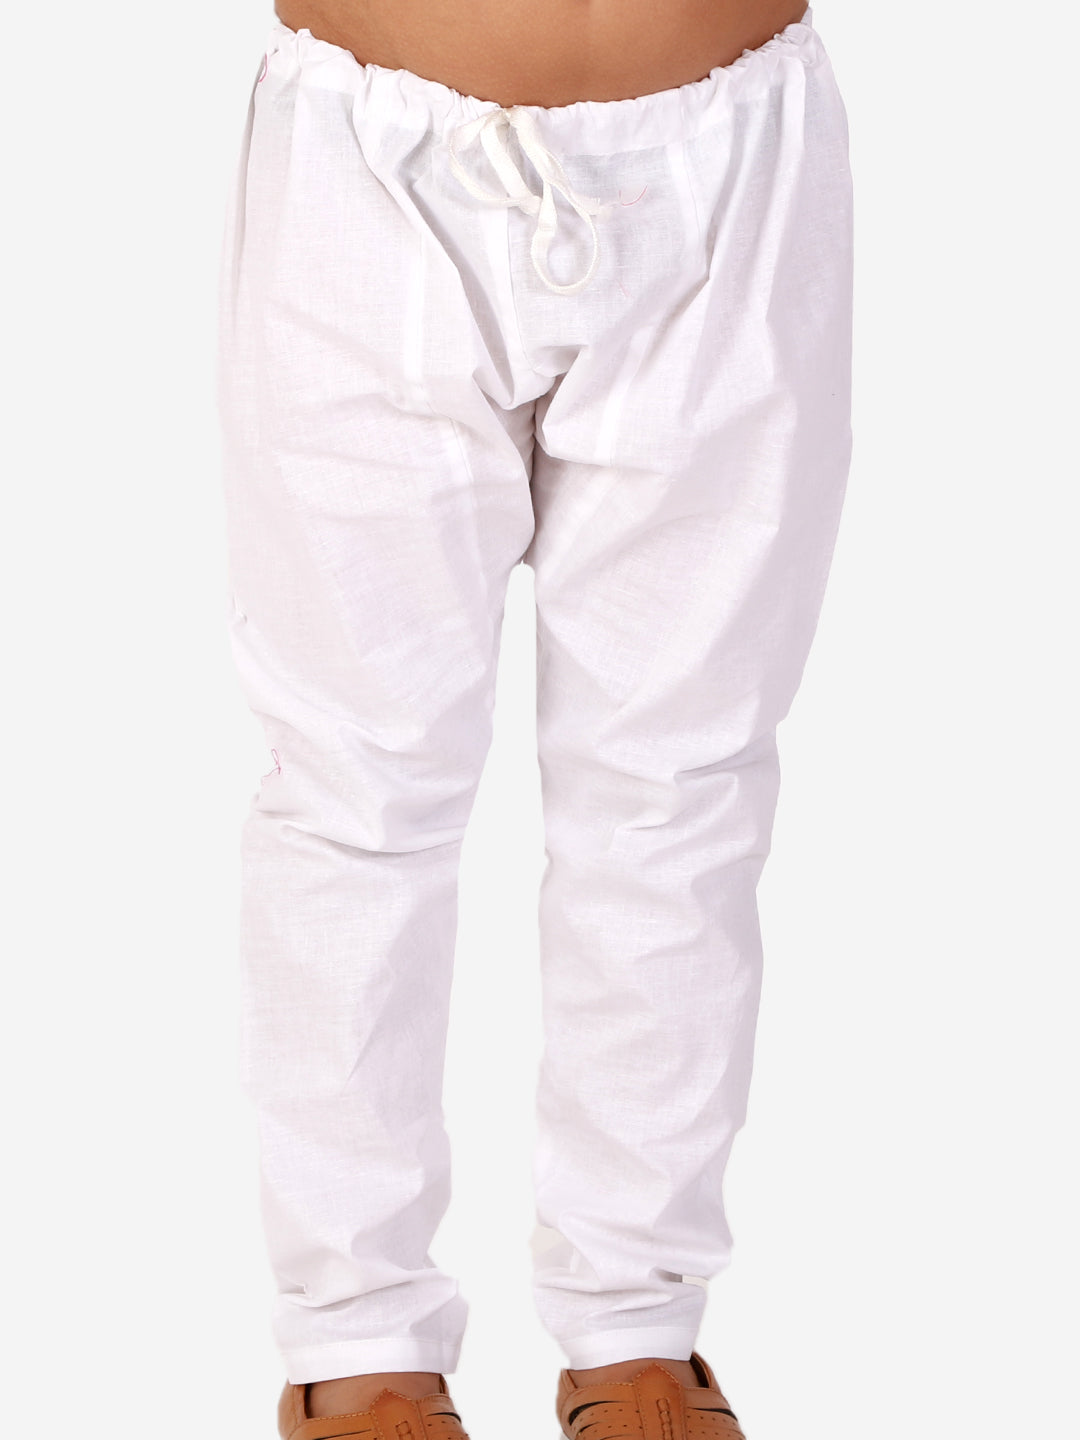 Pro Ethic Cotton Kurta Pajama For Boys Orange Checked S-155